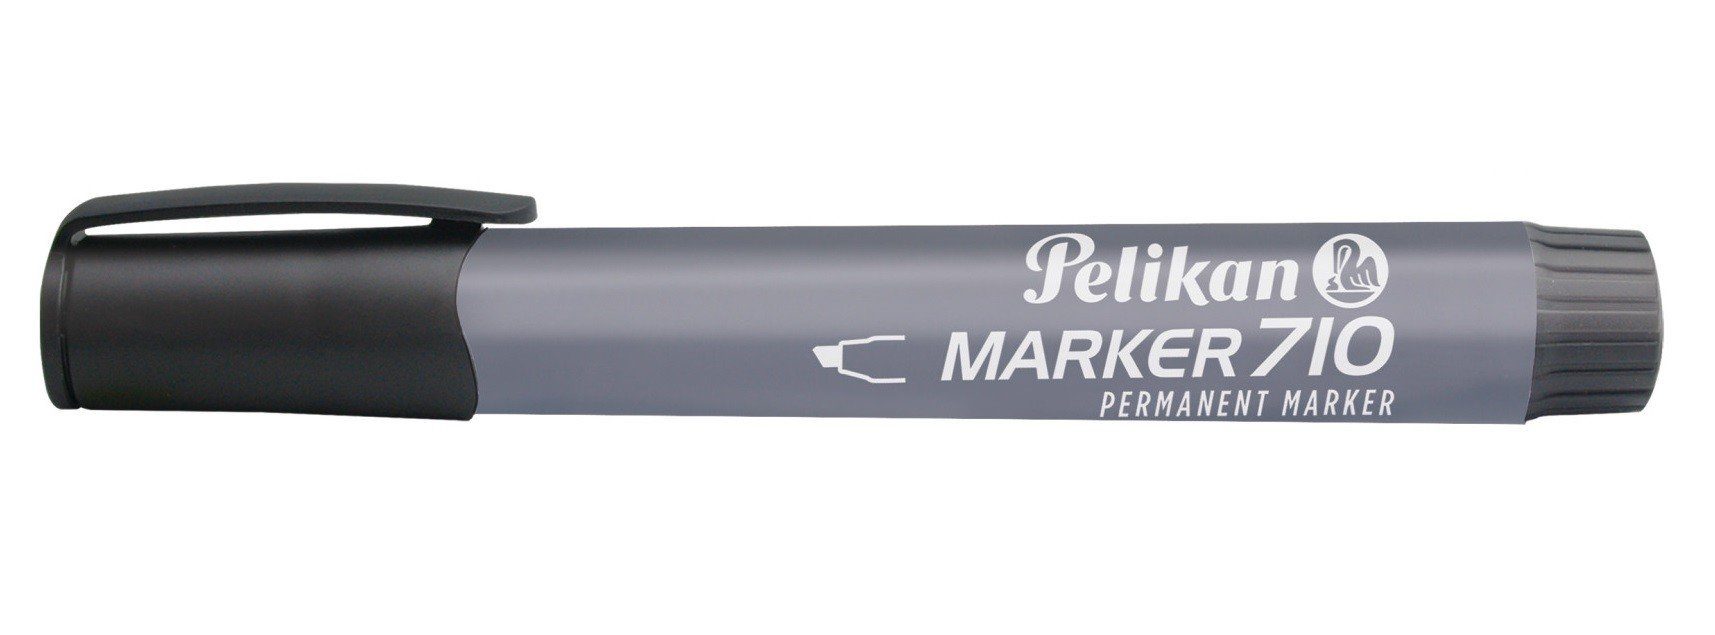 Pelikan Marker Pelikan Marker 710 schwarz | Marker